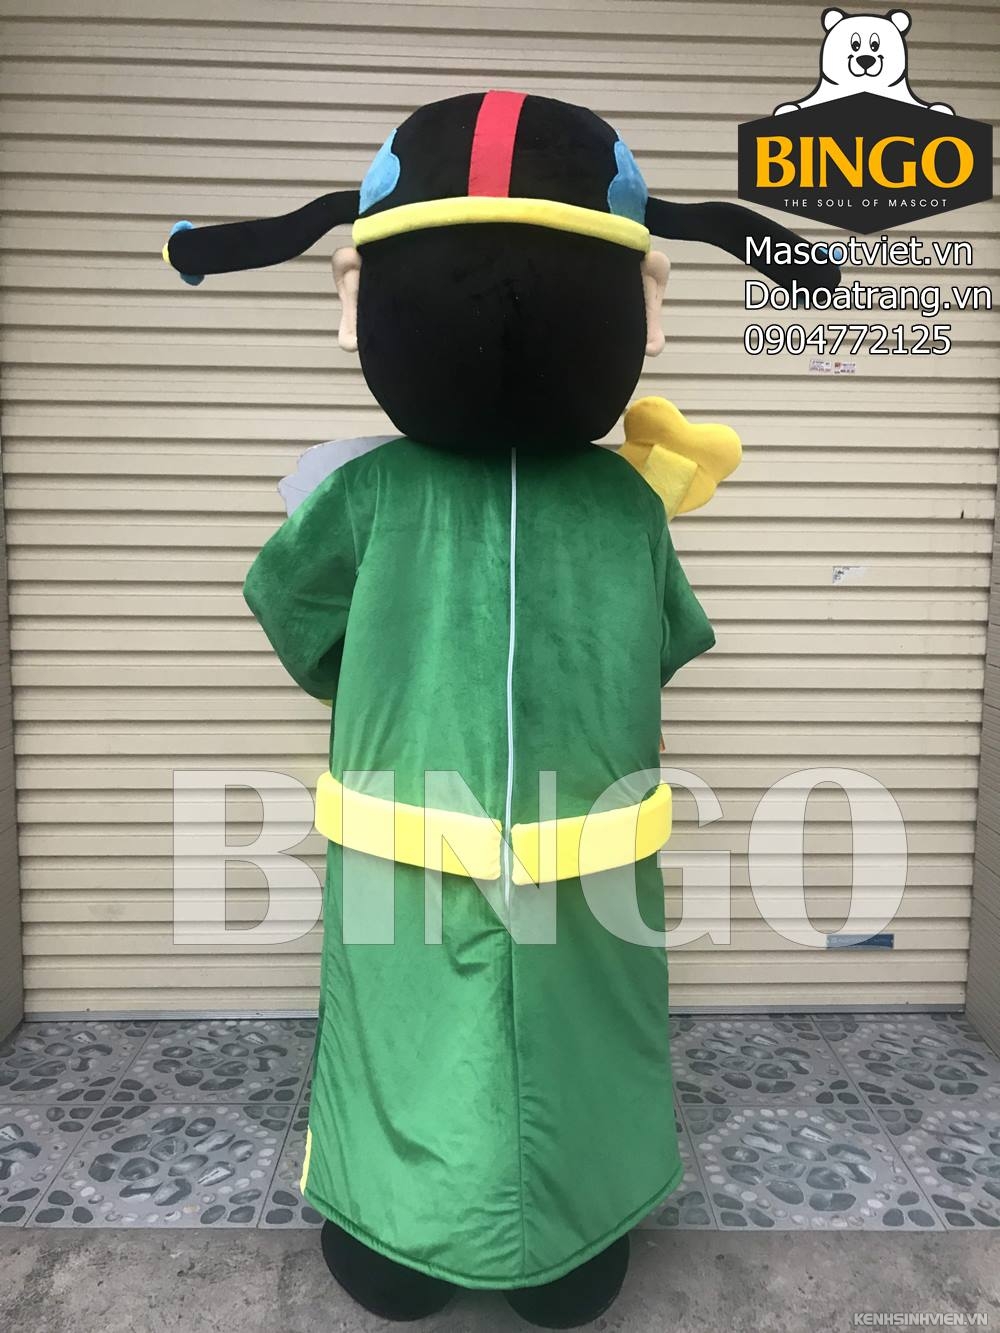 mascot-ong-loc-bingo-costumes-0904772125-2-.jpg